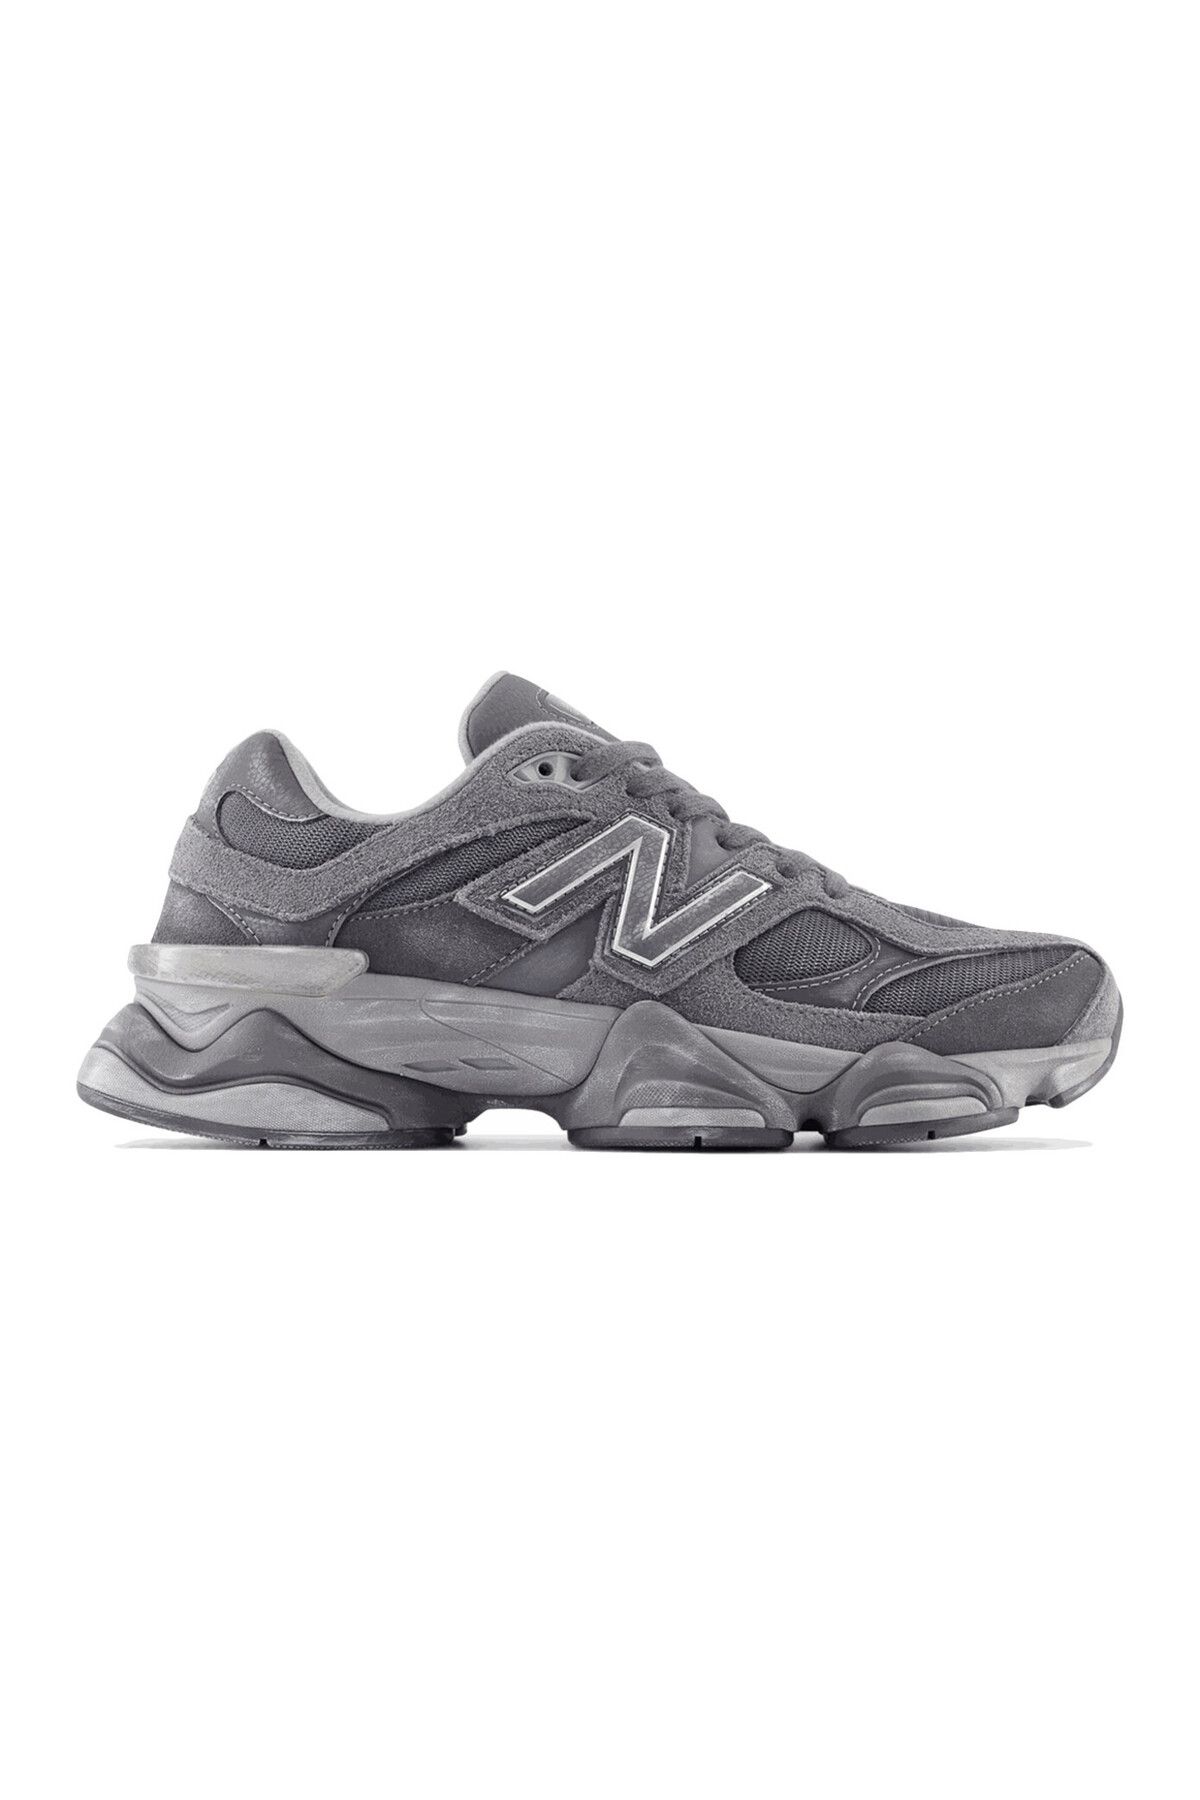 New Balance 9060 Magnet -Grey Kadın Spor Ayakkabı